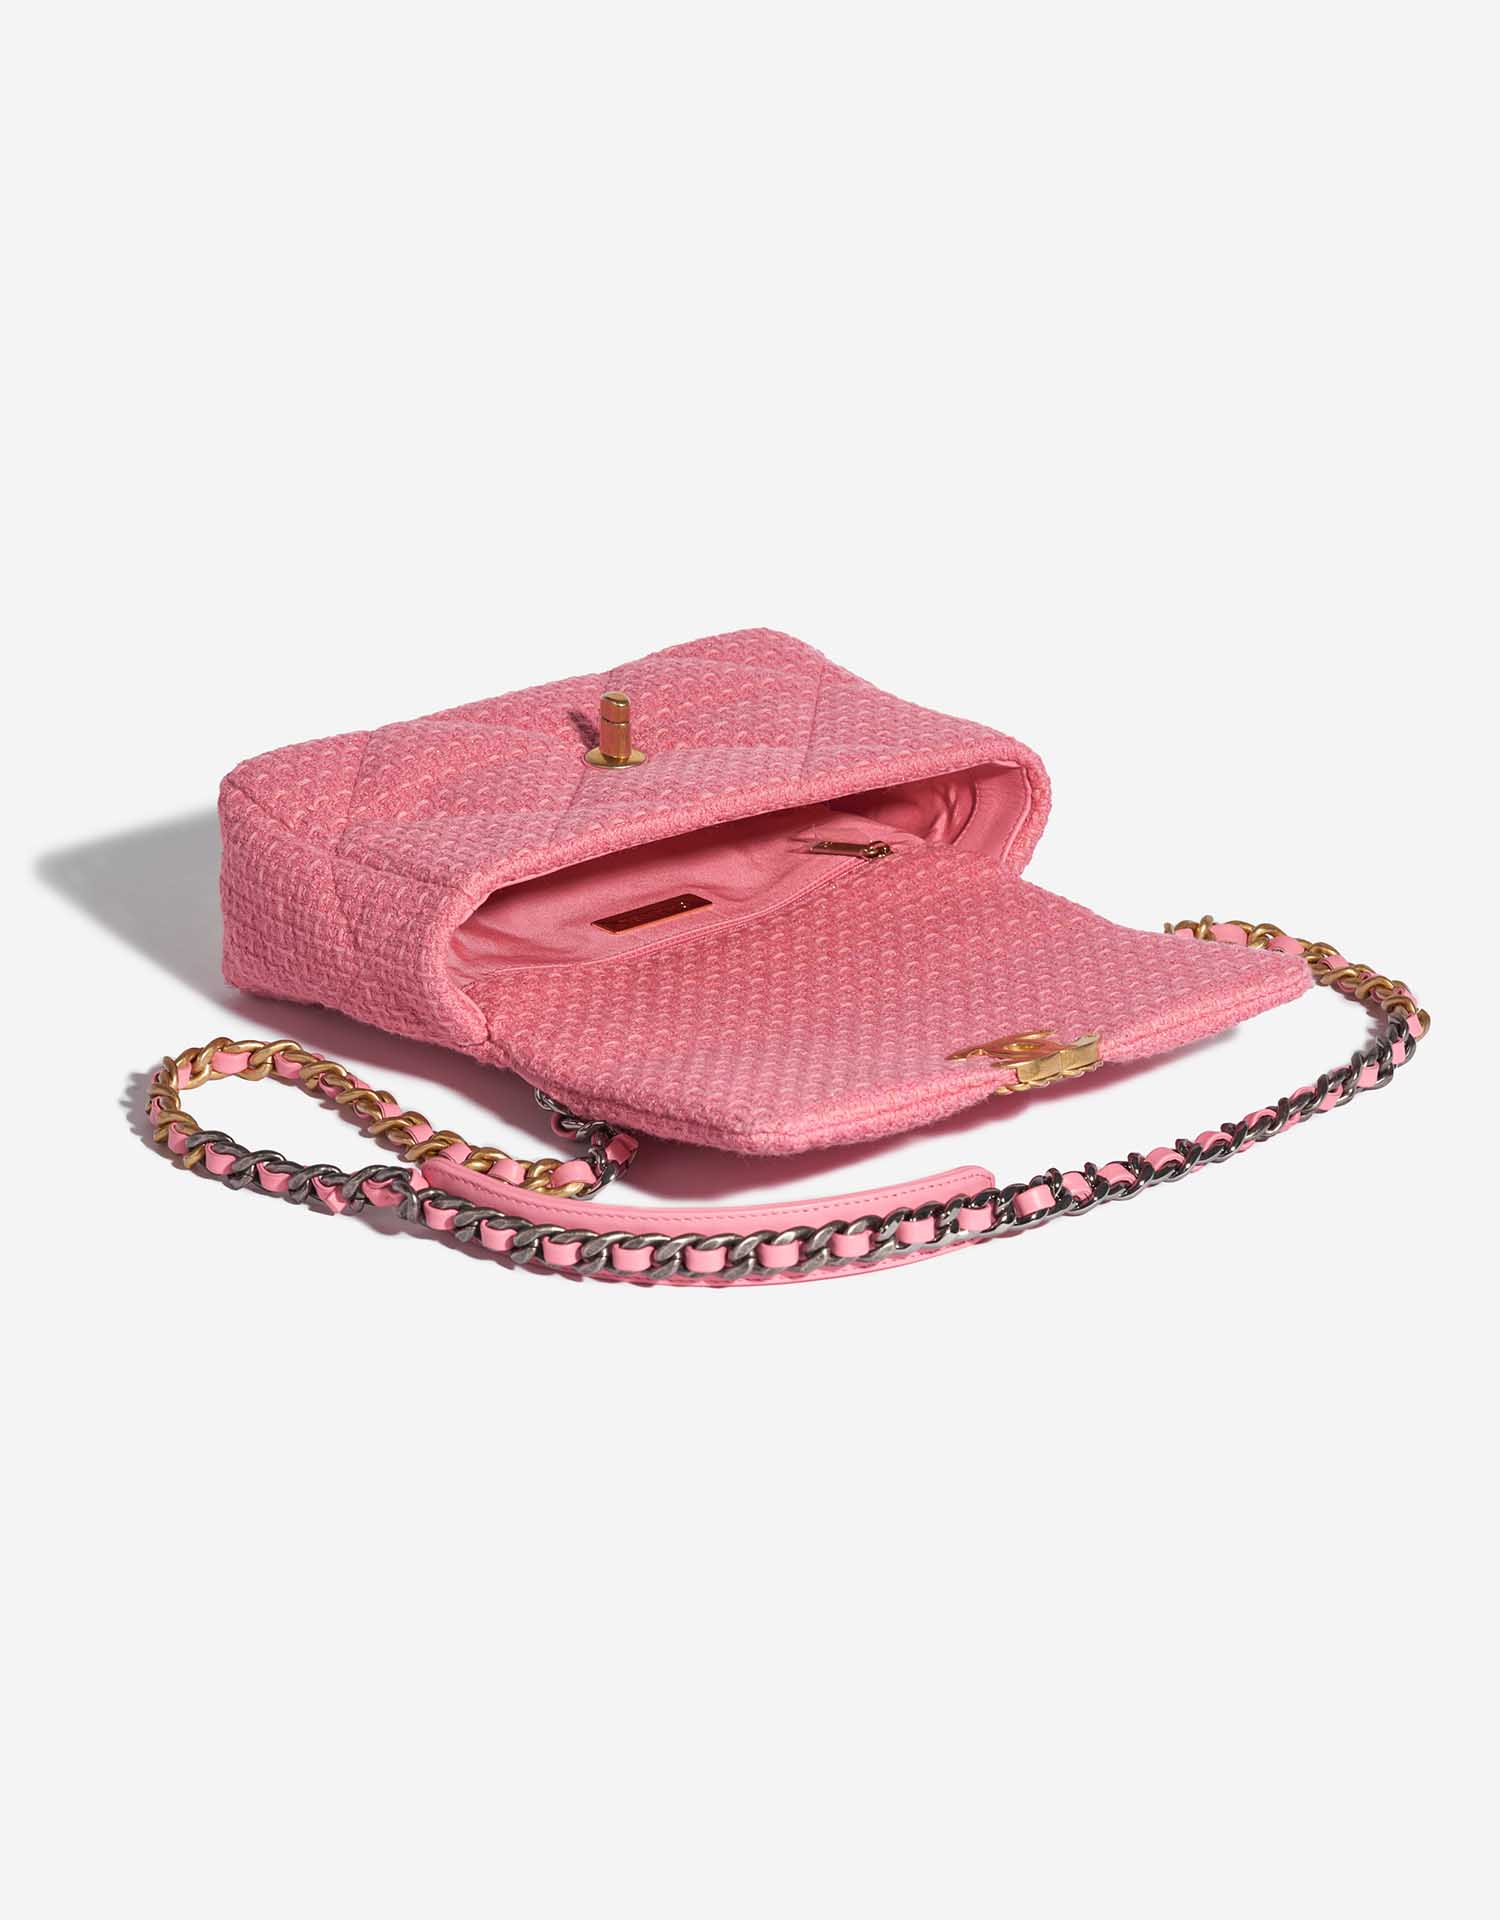 Pre-owned Chanel bag 19 Flap Bag Tweed Light Rosé Rose Inside | Sell your designer bag on Saclab.com